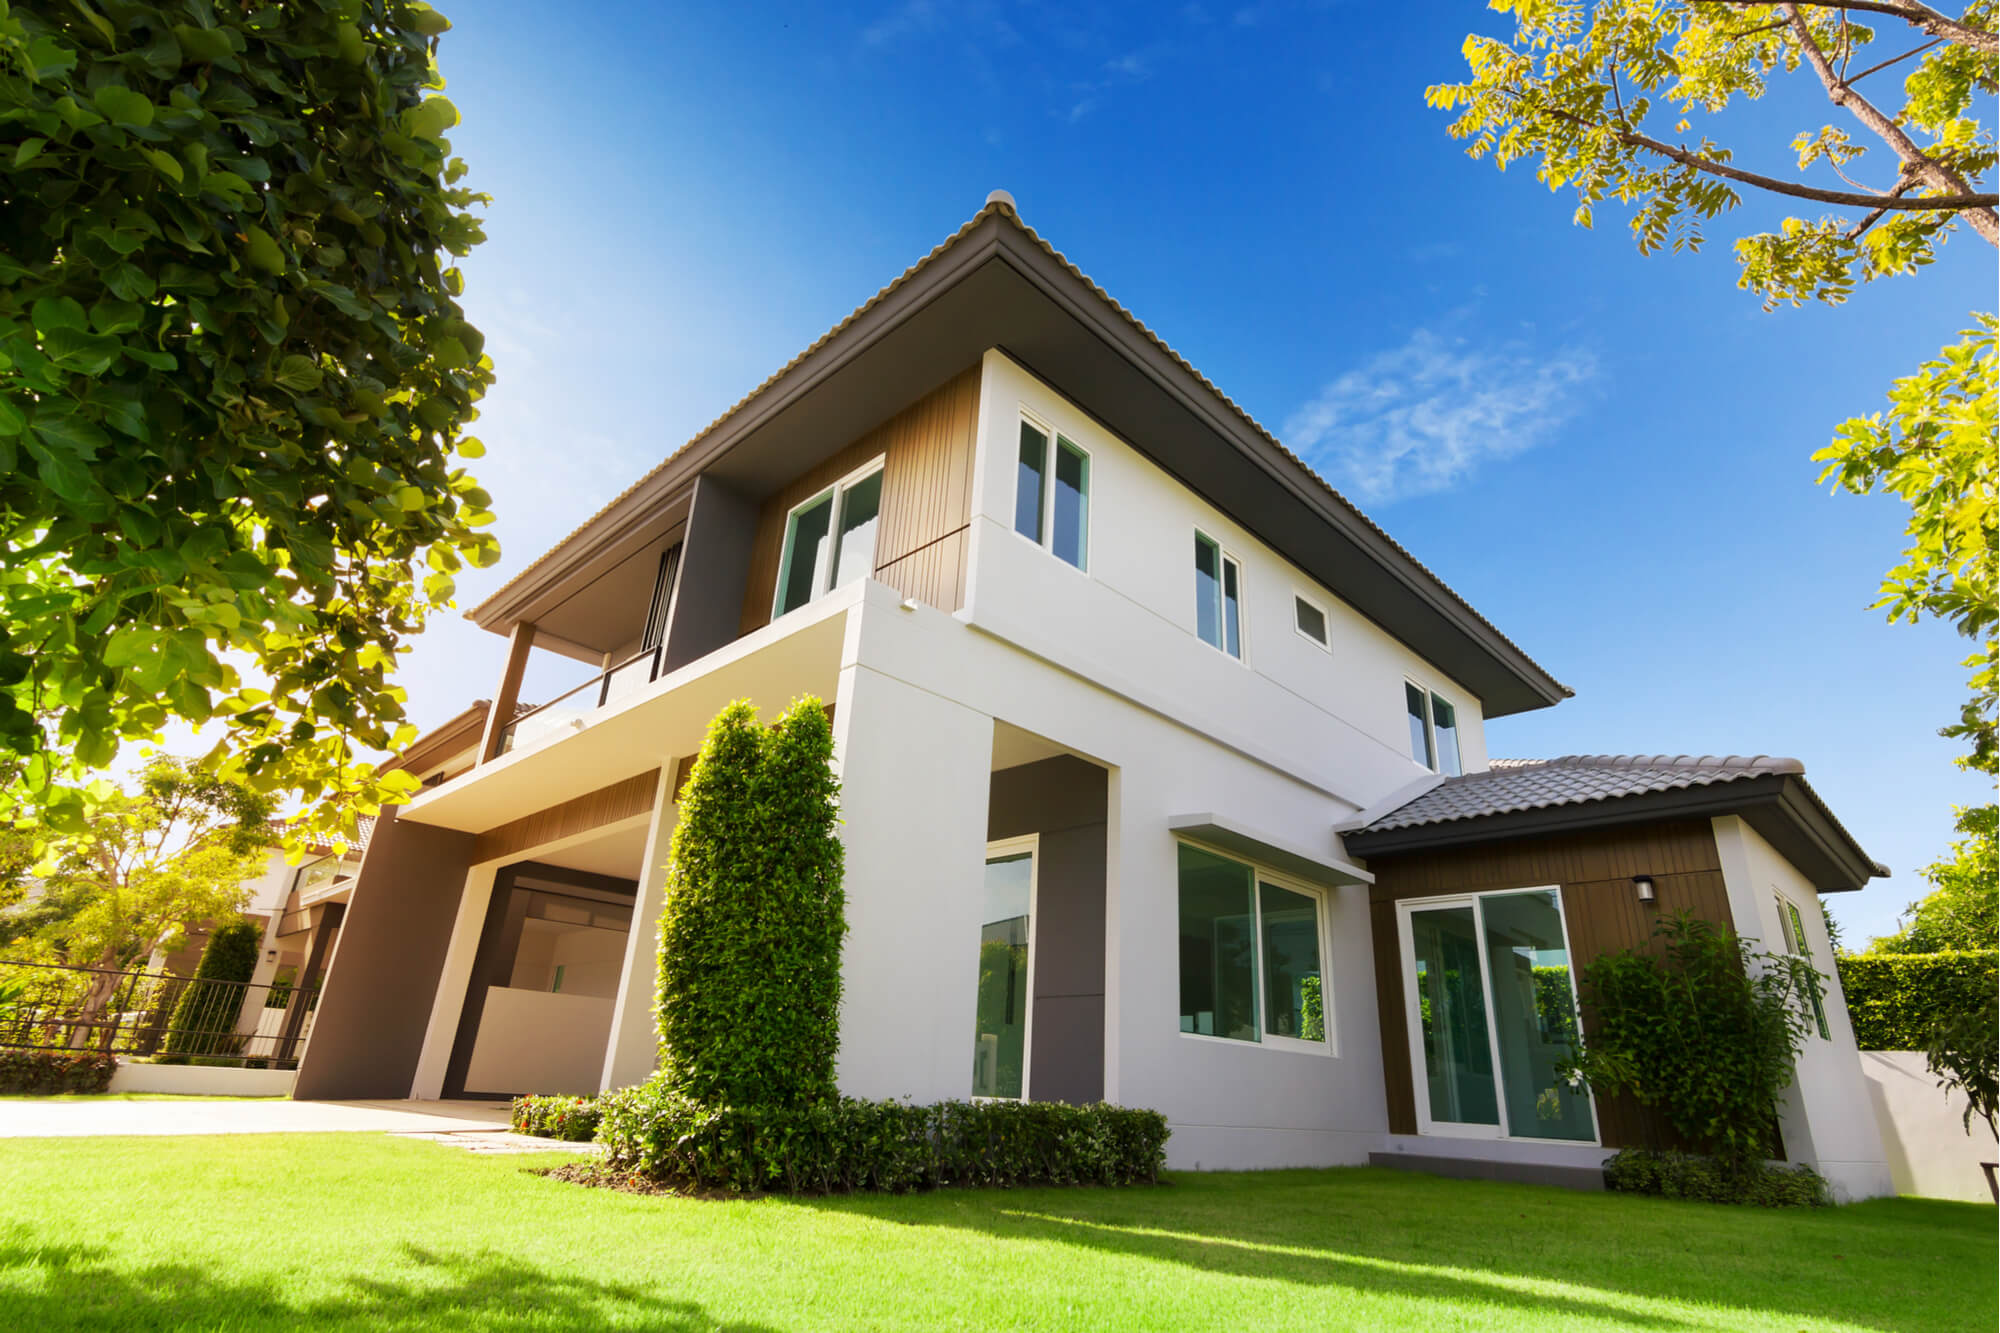 Descubre los beneficios de comprar una casa nueva | Vivanuncios